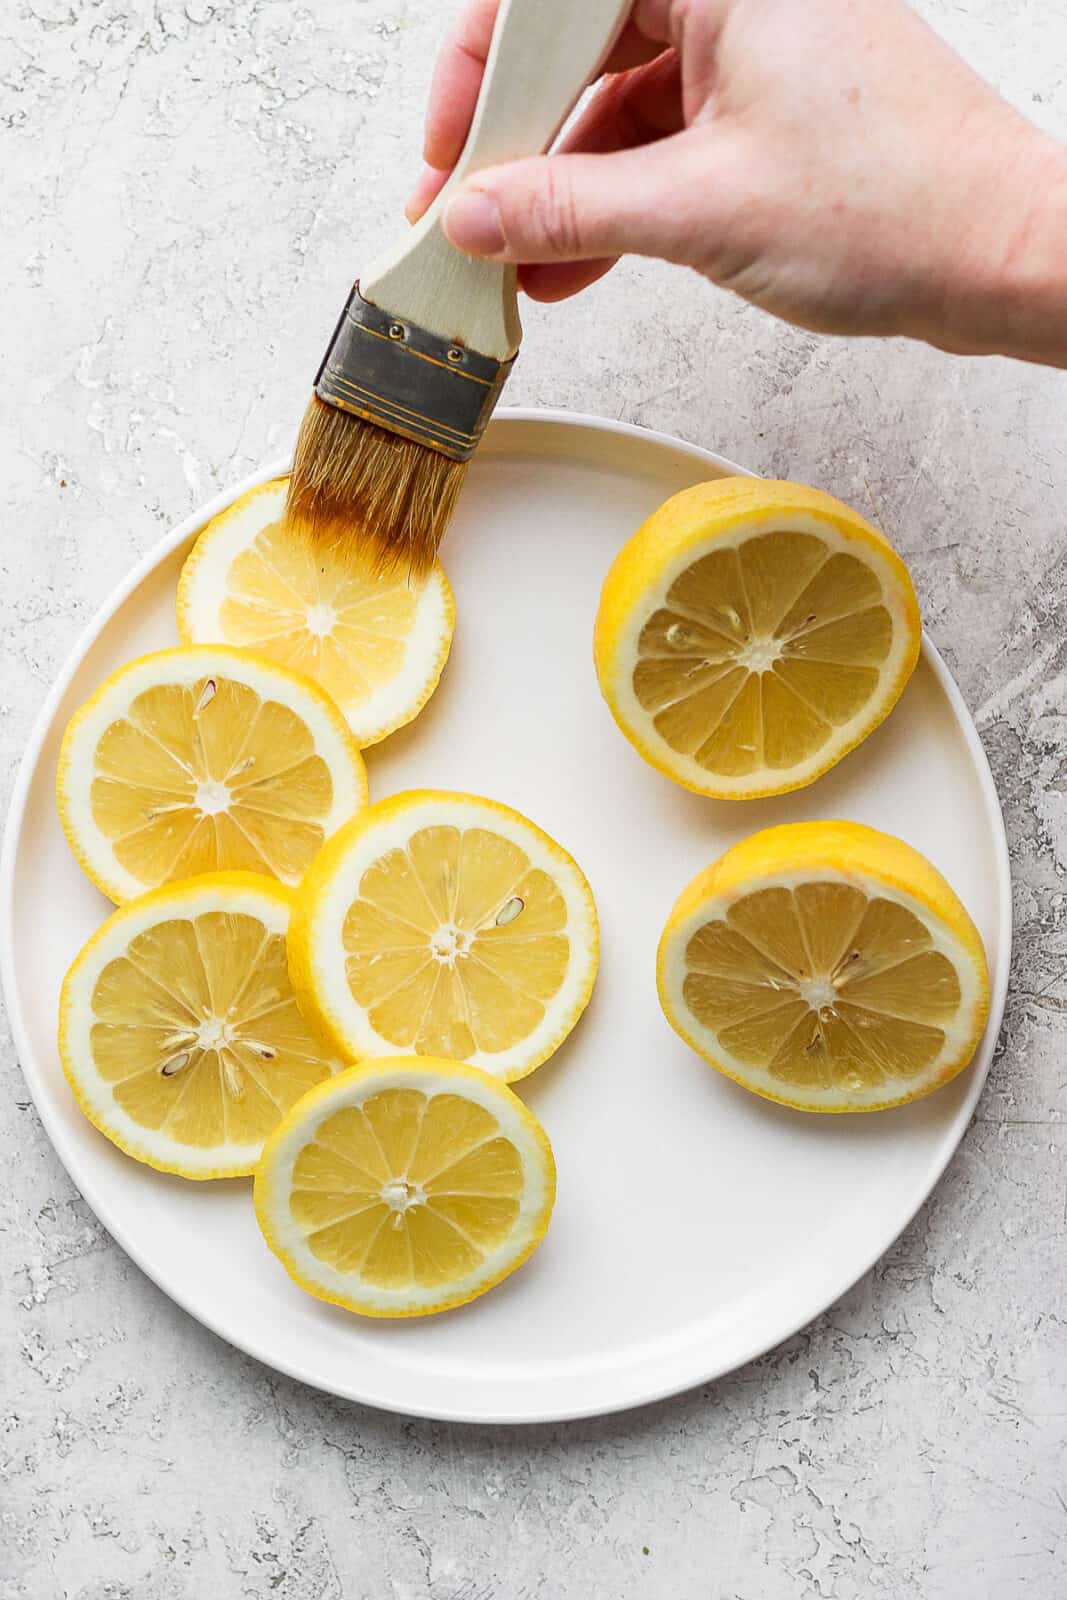 Brushing olive oil on lemon slices.